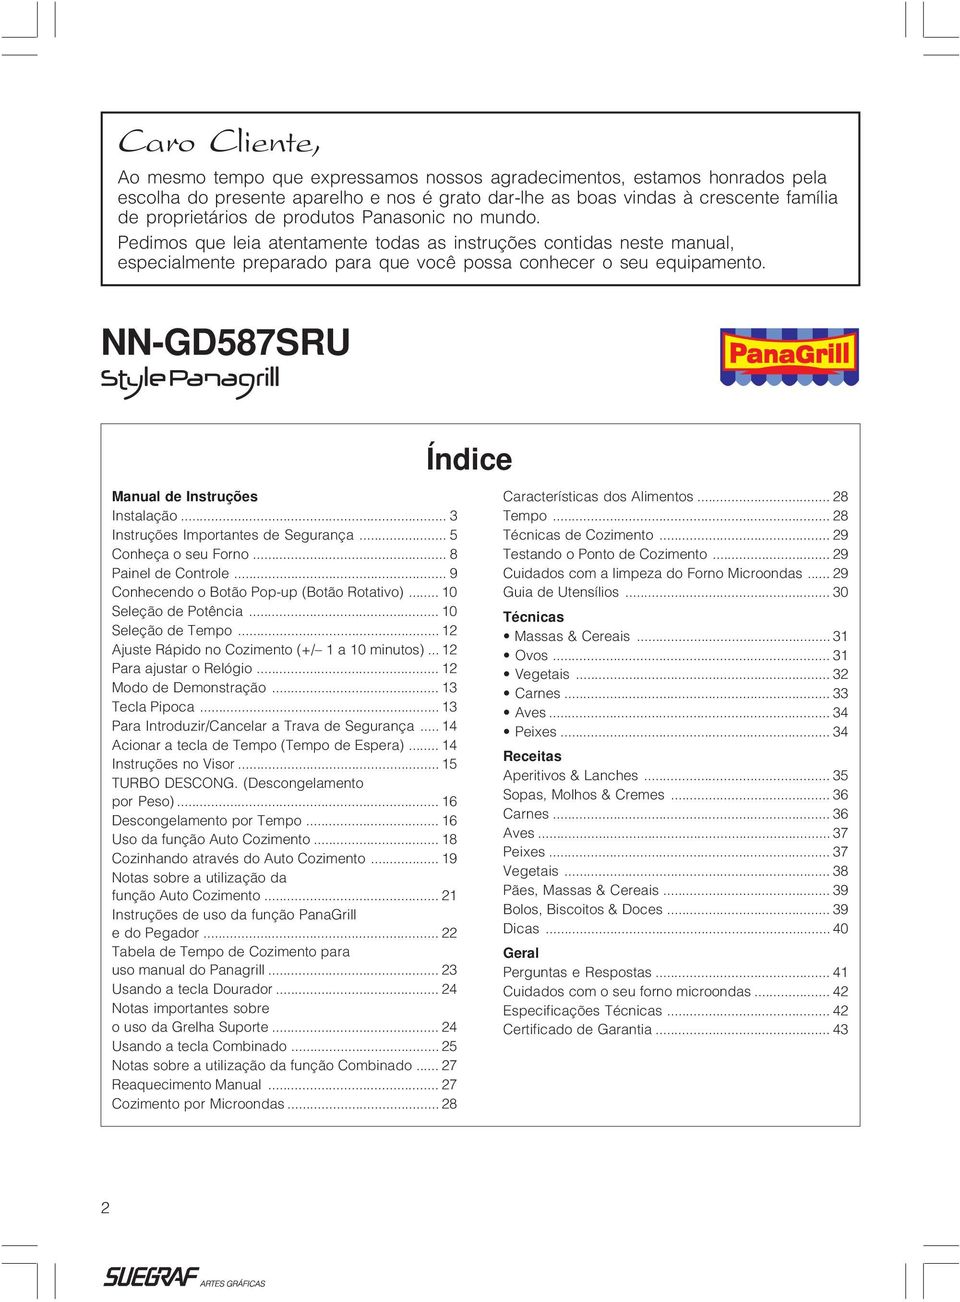 NN-GD587SRU Índice Manual de Instruções Instalação... 3 Instruções Importantes de Segurança... 5 Conheça o seu Forno... 8 Painel de Controle... 9 Conhecendo o Botão Pop-up (Botão Rotativo).